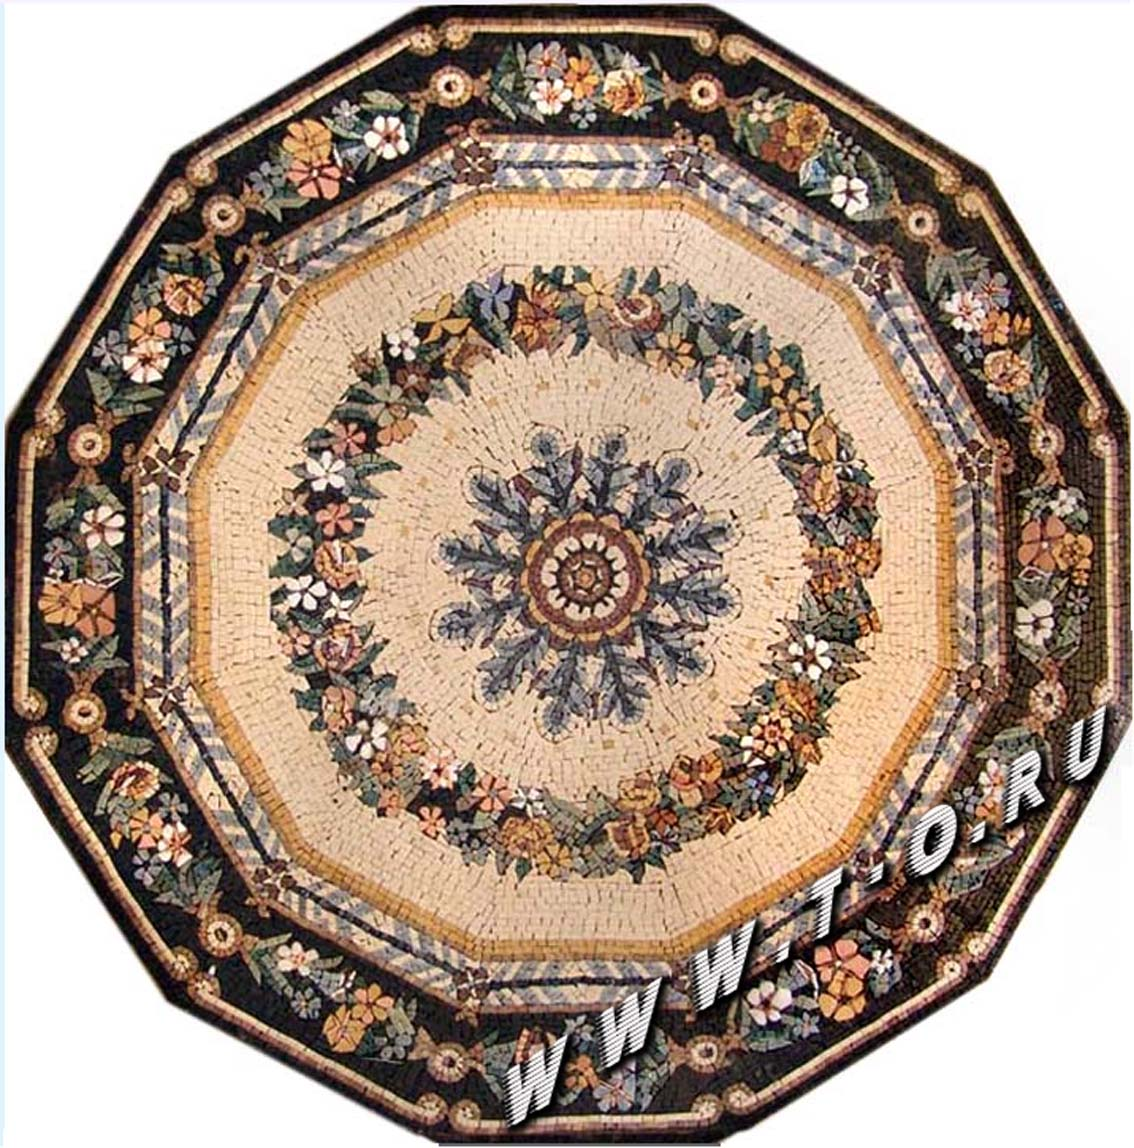 Мозаика из натурального камня - мозаичное панно для оформления ванных комнат бассейнов, пола, стен и потолков. Изготовление на заказ и продажа готовых.